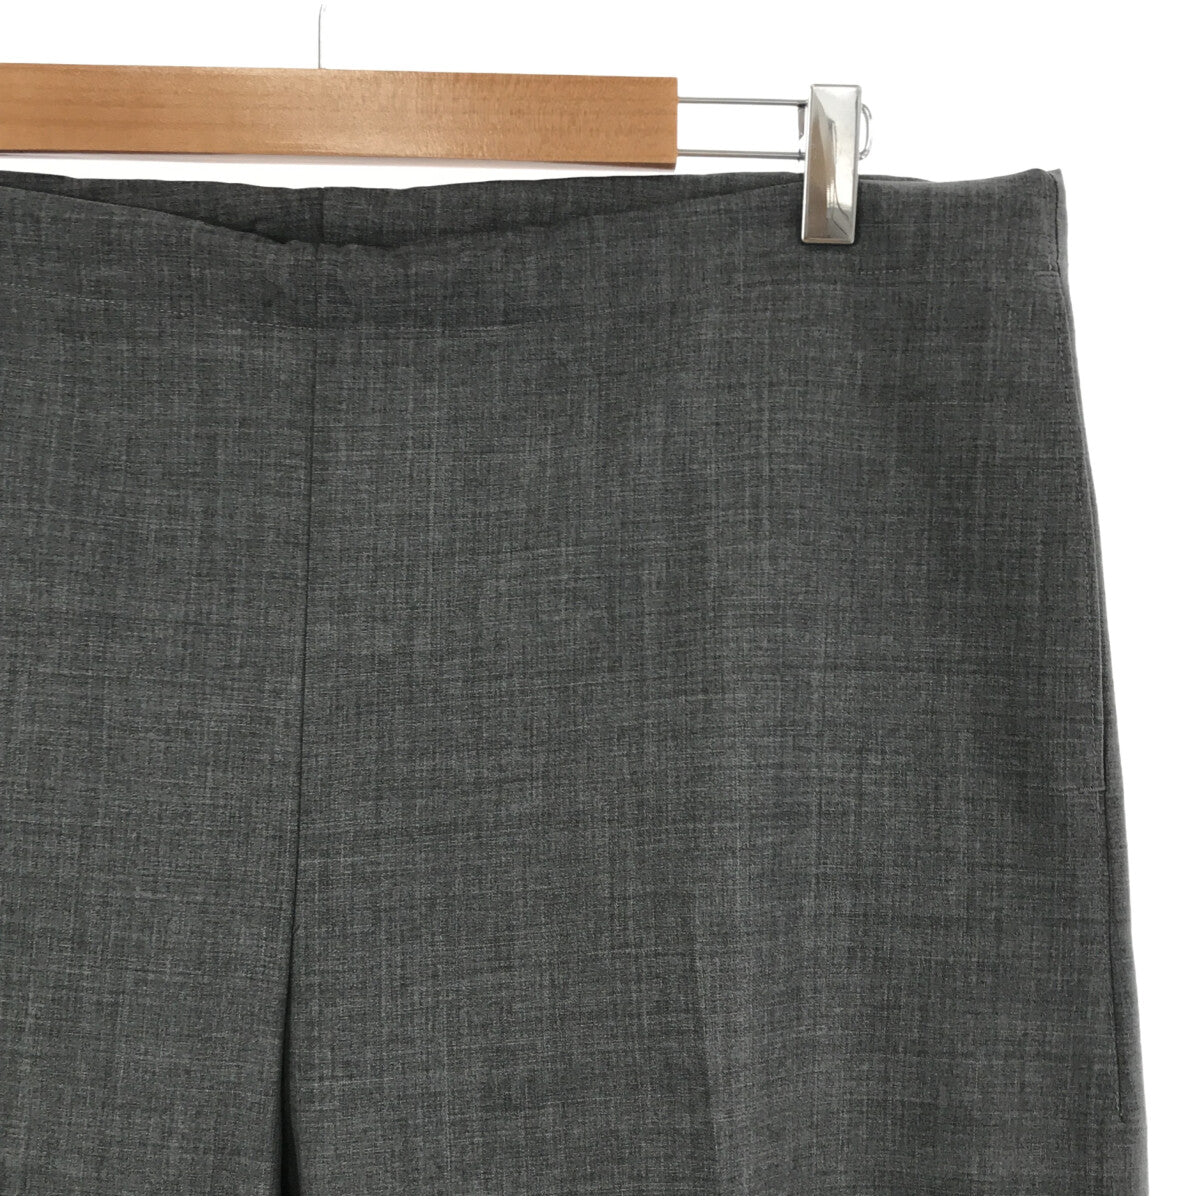 【美品】 HERILL / ヘリル | Ron Herman 別注 Soft Twist Organic Cotton Pants パンツ | 1 |  グレー | レディース